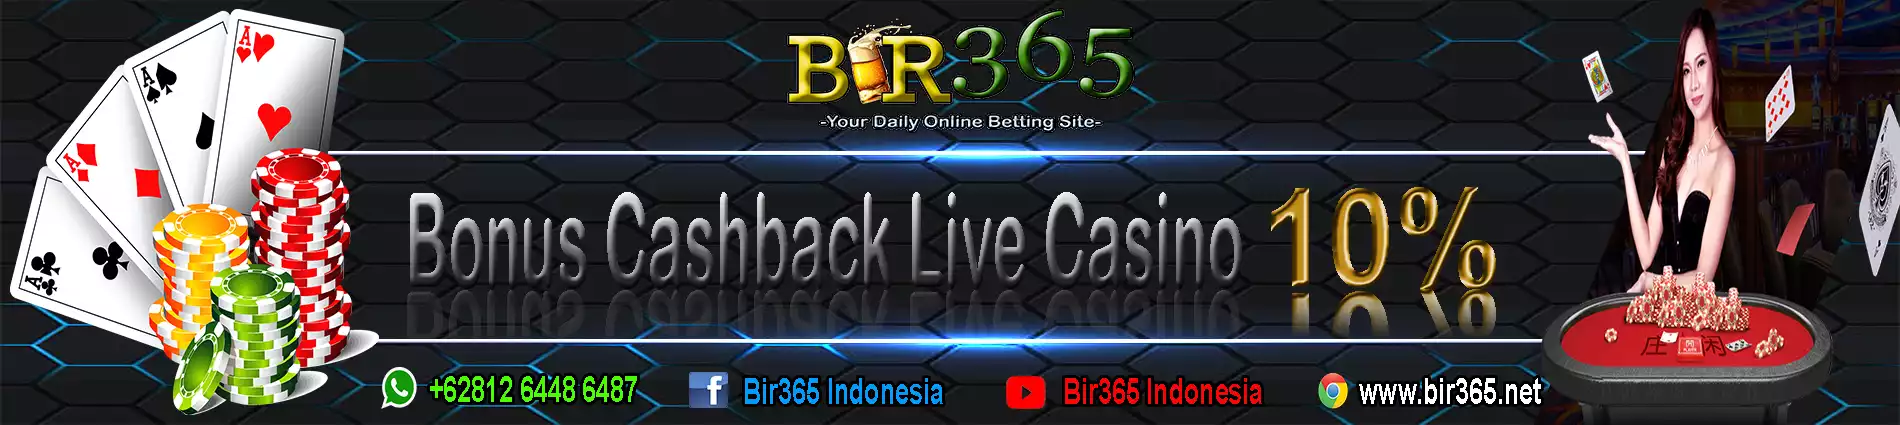 Bonus Cashback Live Casino 10%